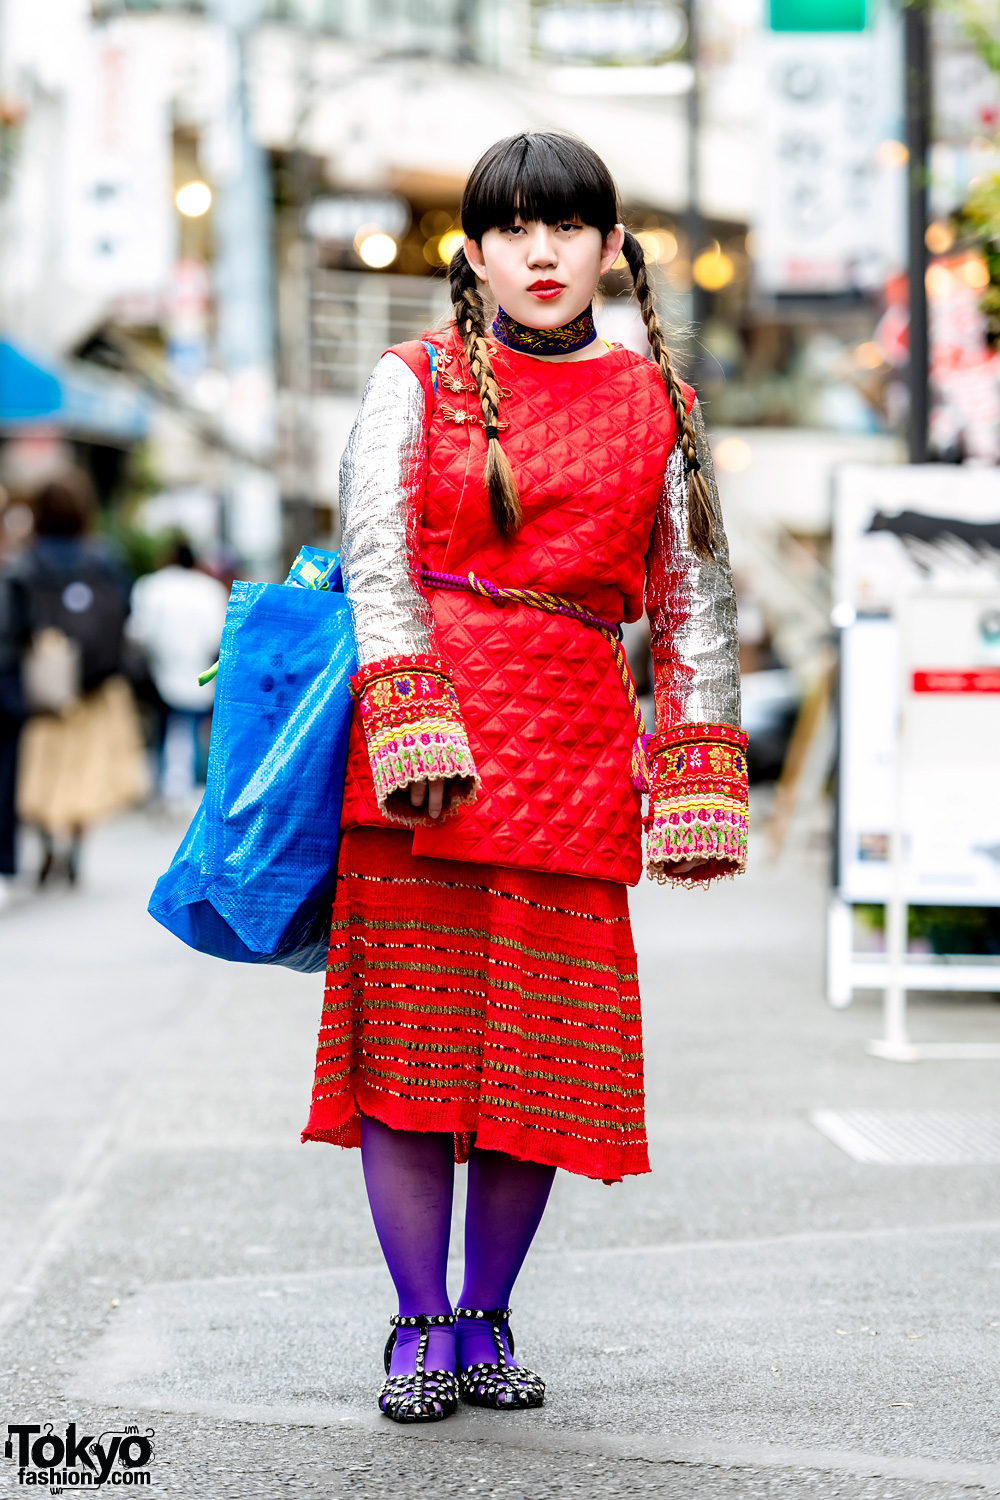 Handmade & Vintage Fashion in Harajuku – Tokyo Fashion